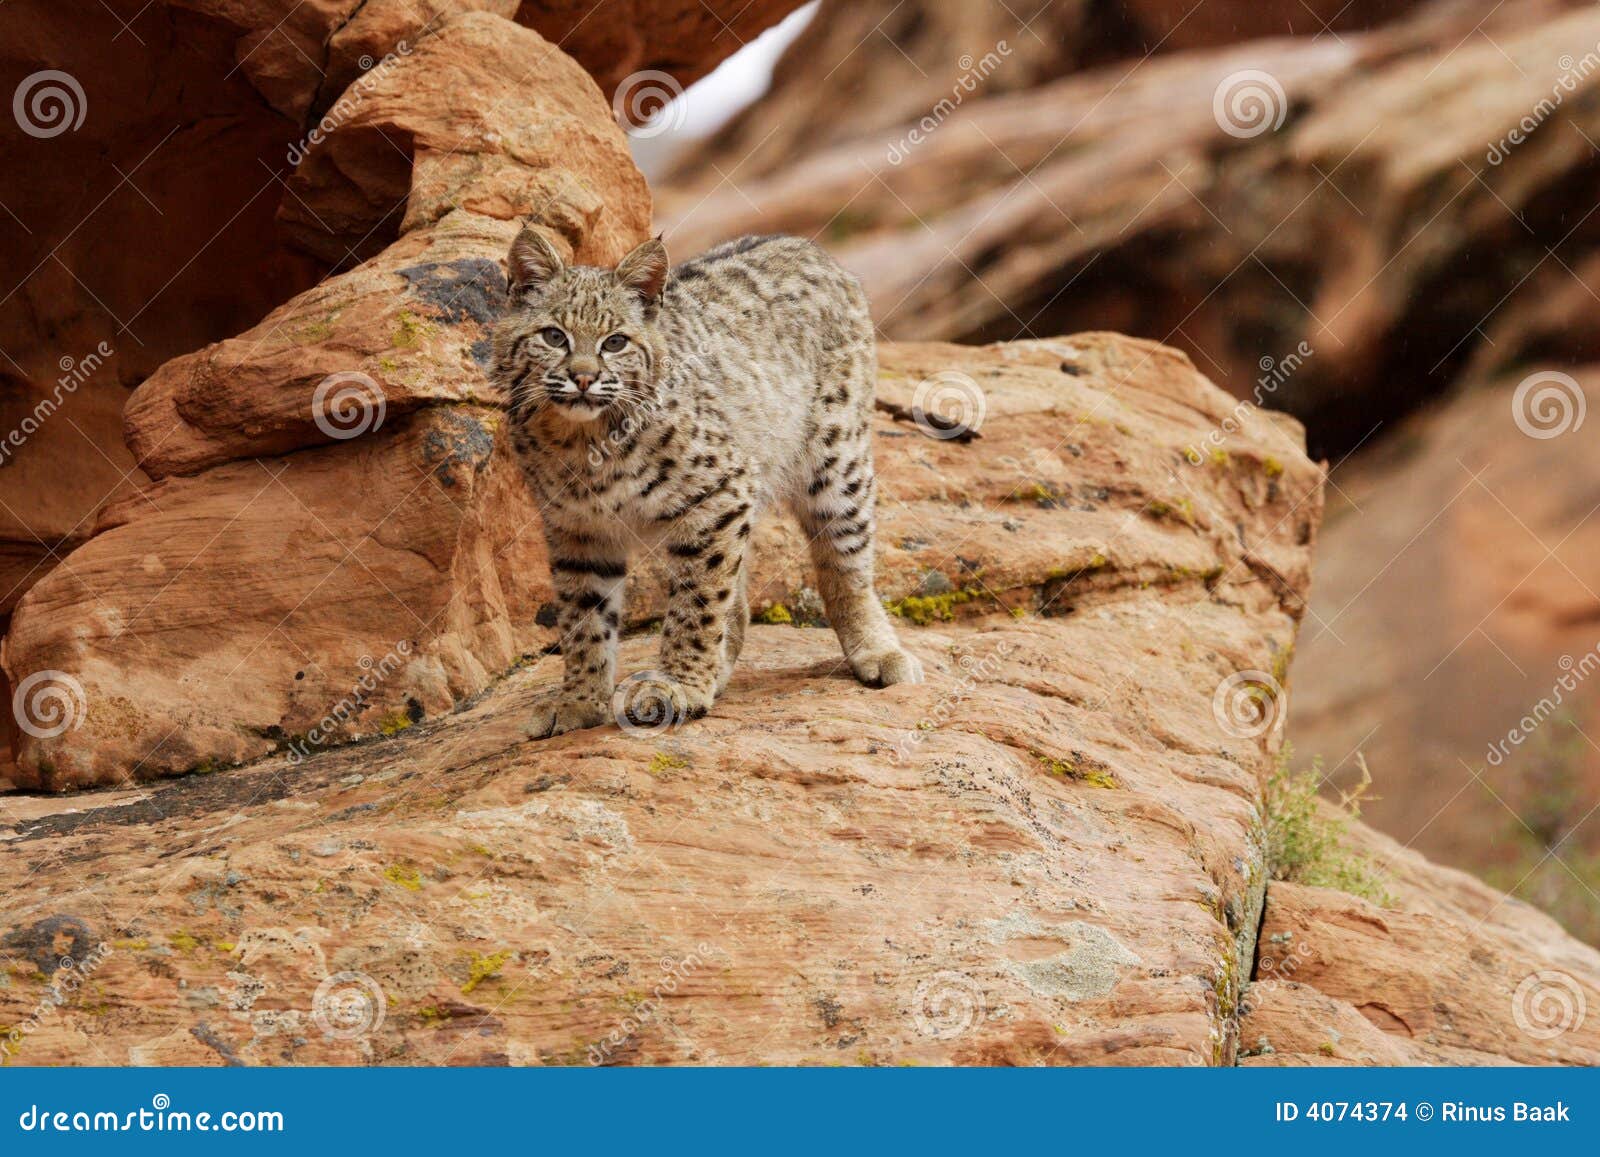 bobcat on rocky ledge